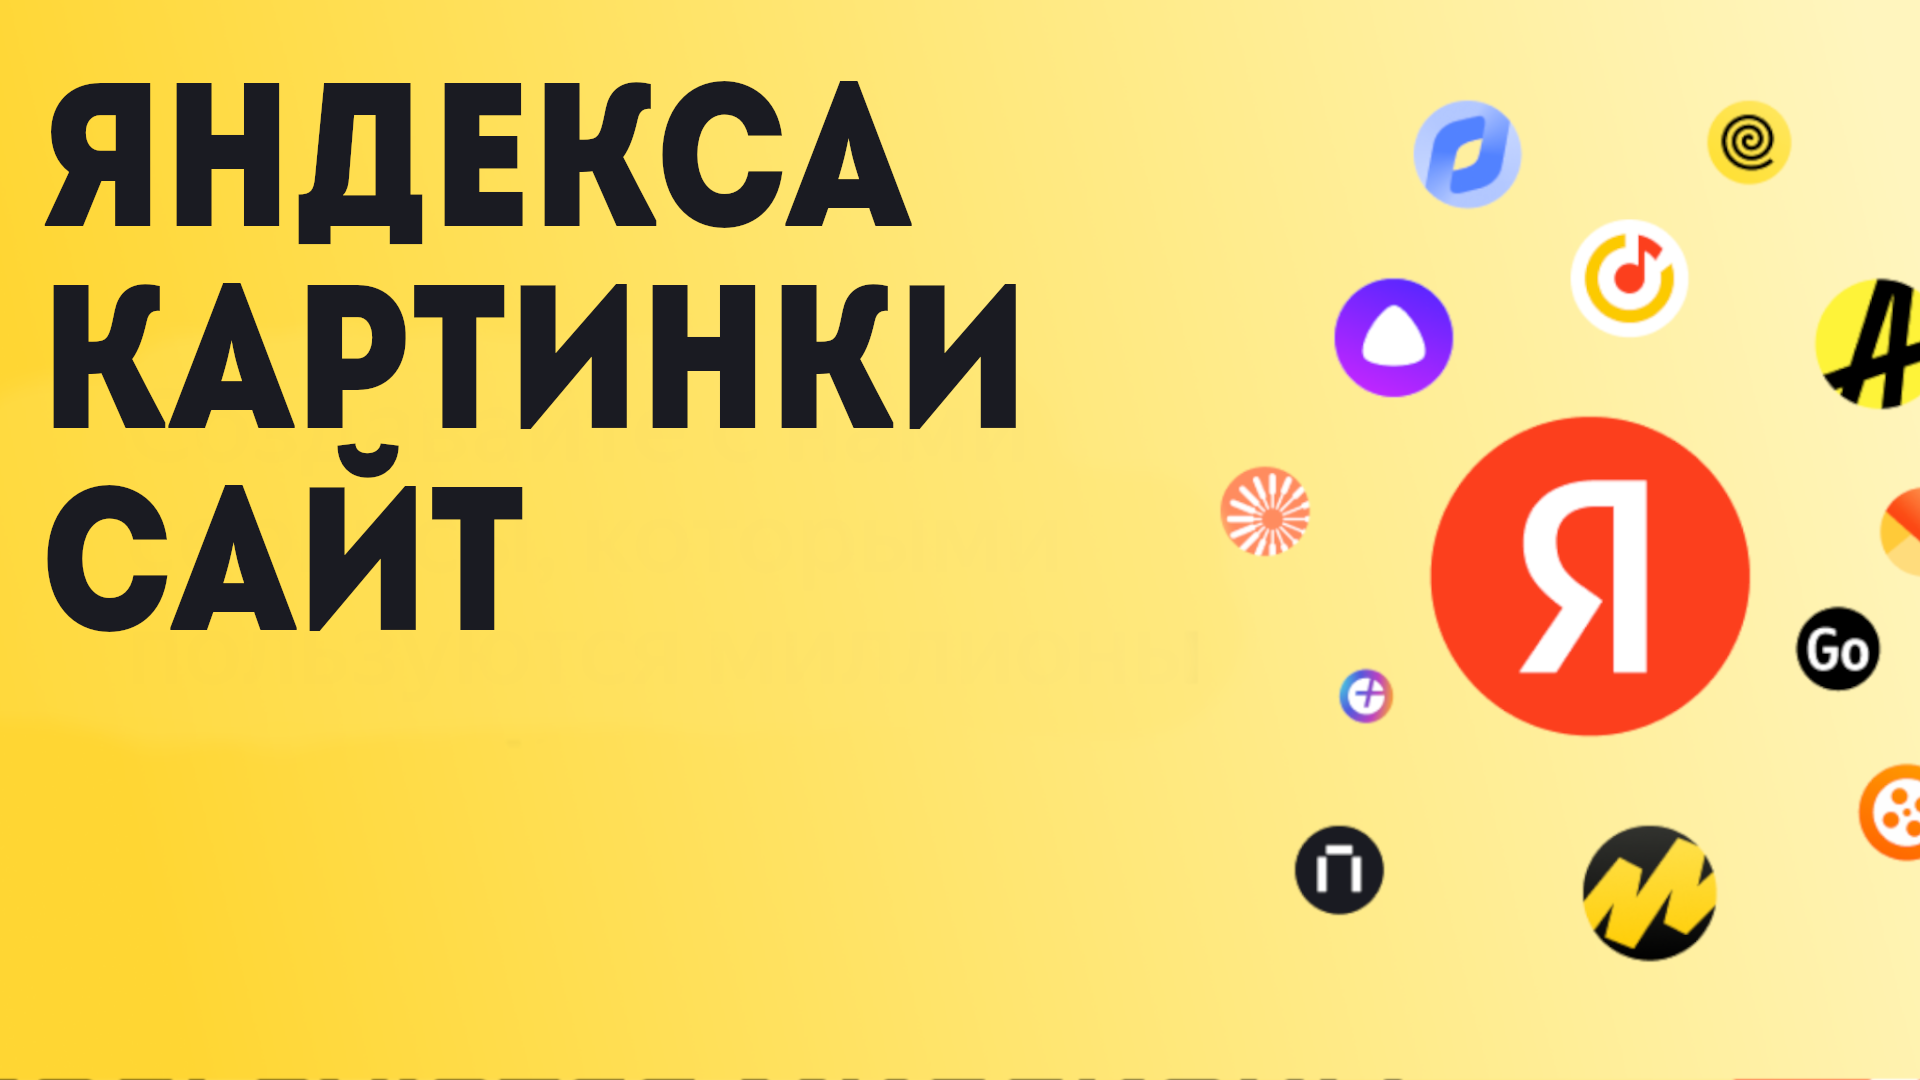 Яндекса картинки сайт